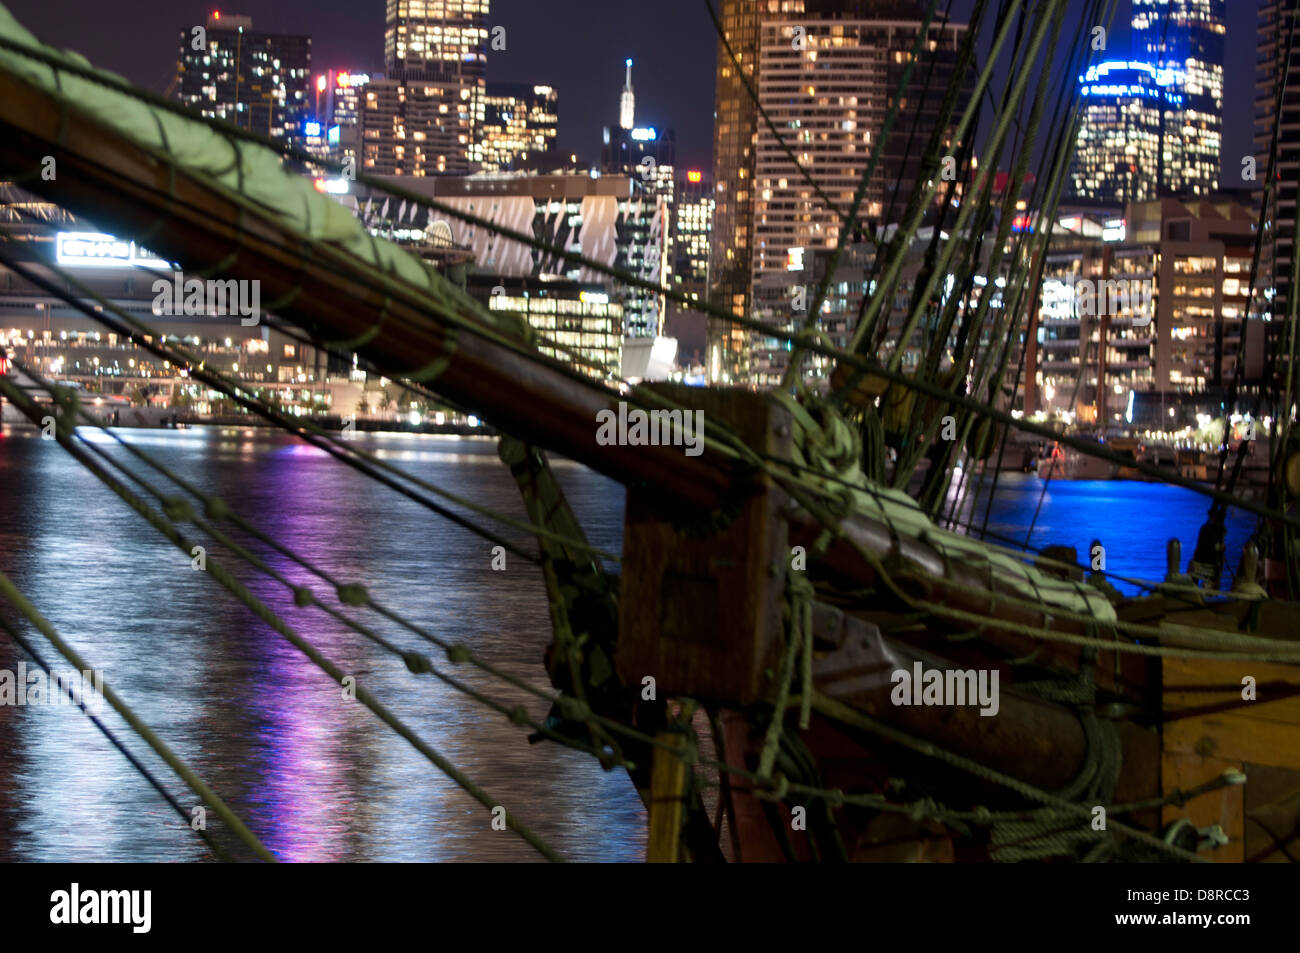 Melbourne City Himmel Linie nachts mit Lichtreflexion auf dem Wasser, die alte Ordnung gebracht Segel Schiff Maske und Verkauf im Vordergrund Stockfoto